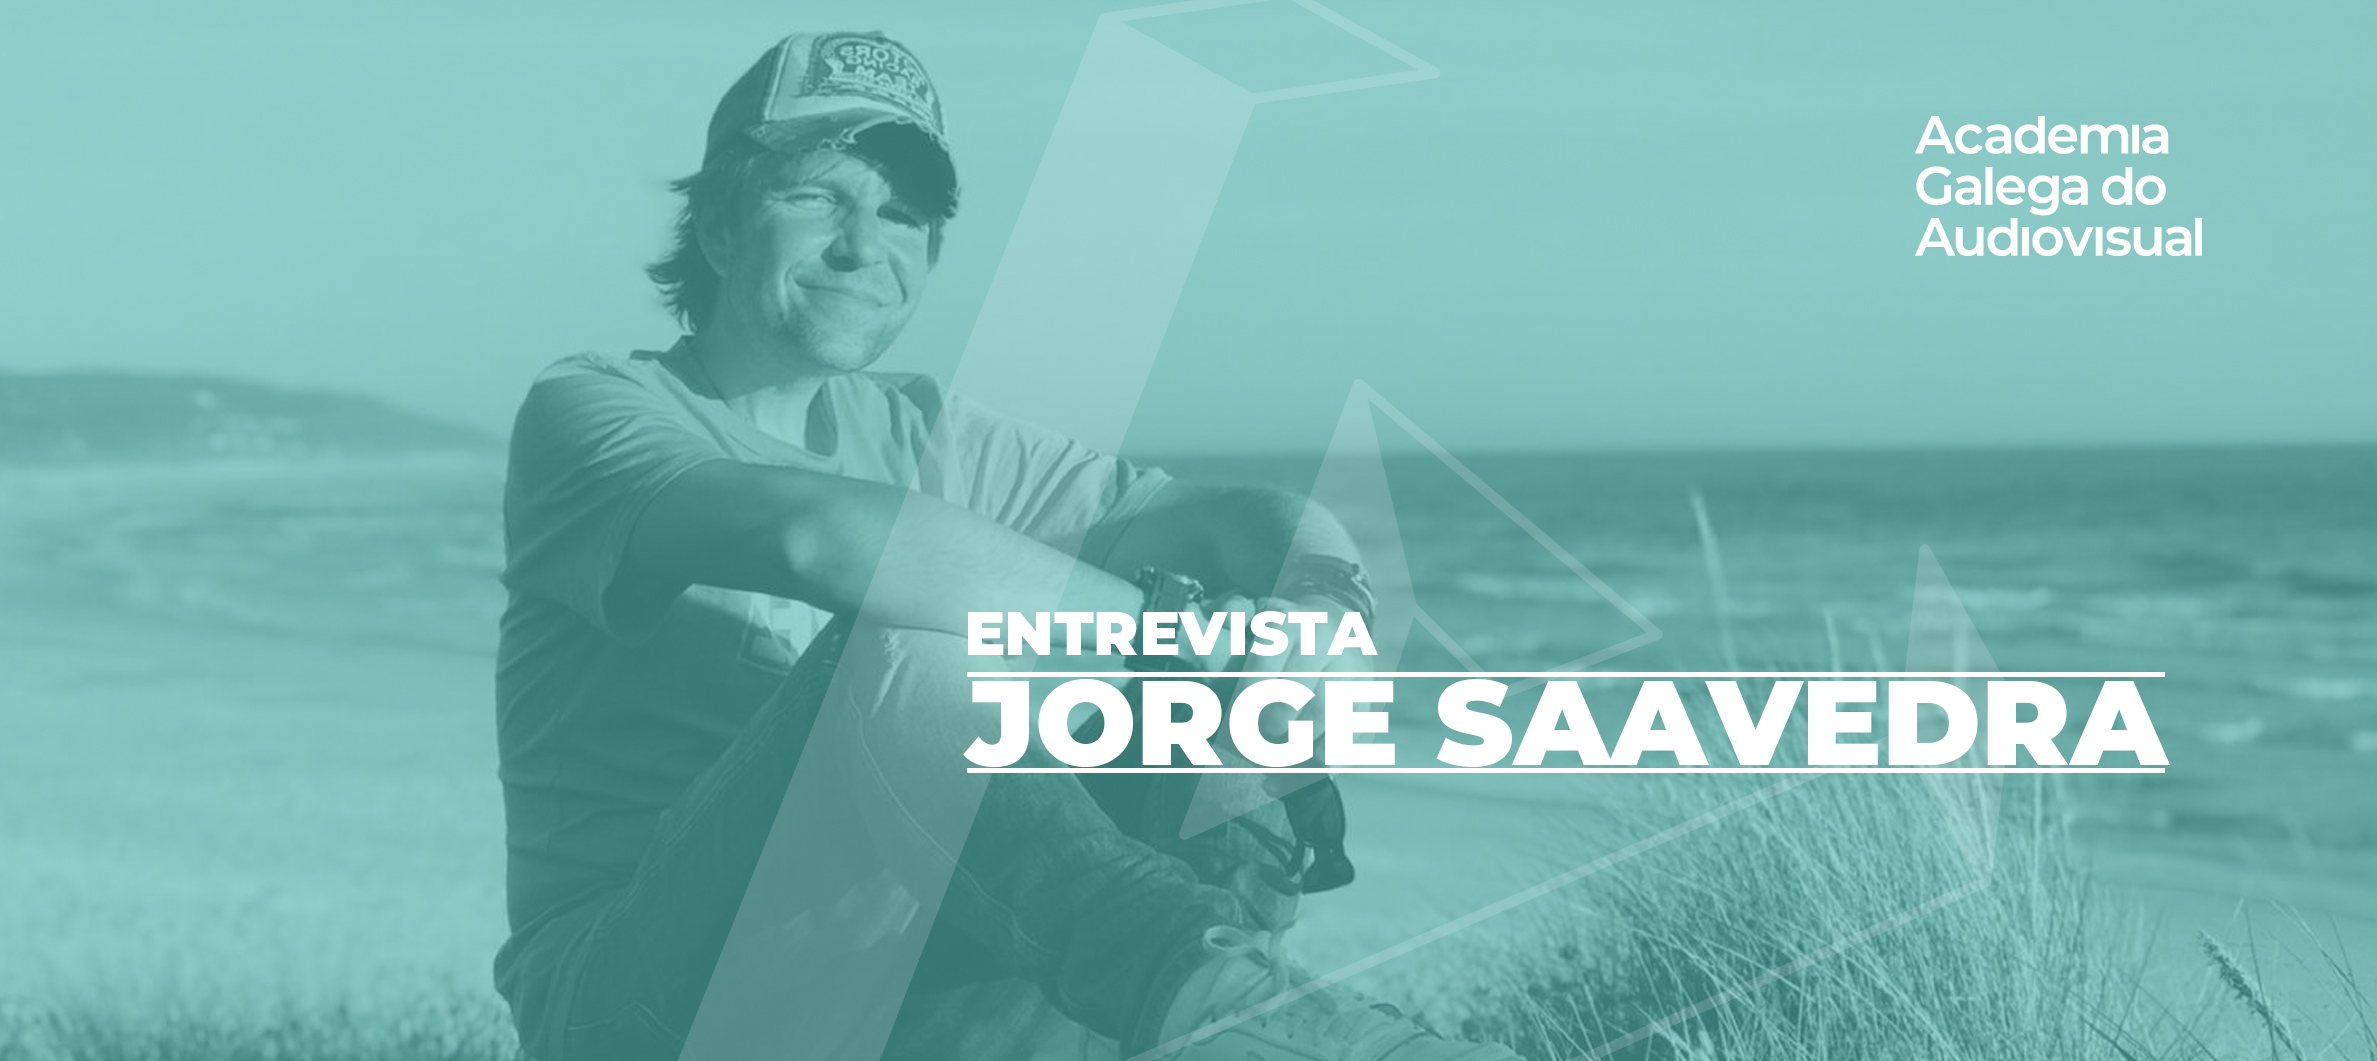 Jorge Saavedra: “Esta profesión é unha aprendizaxe constante tremendamente divertida”